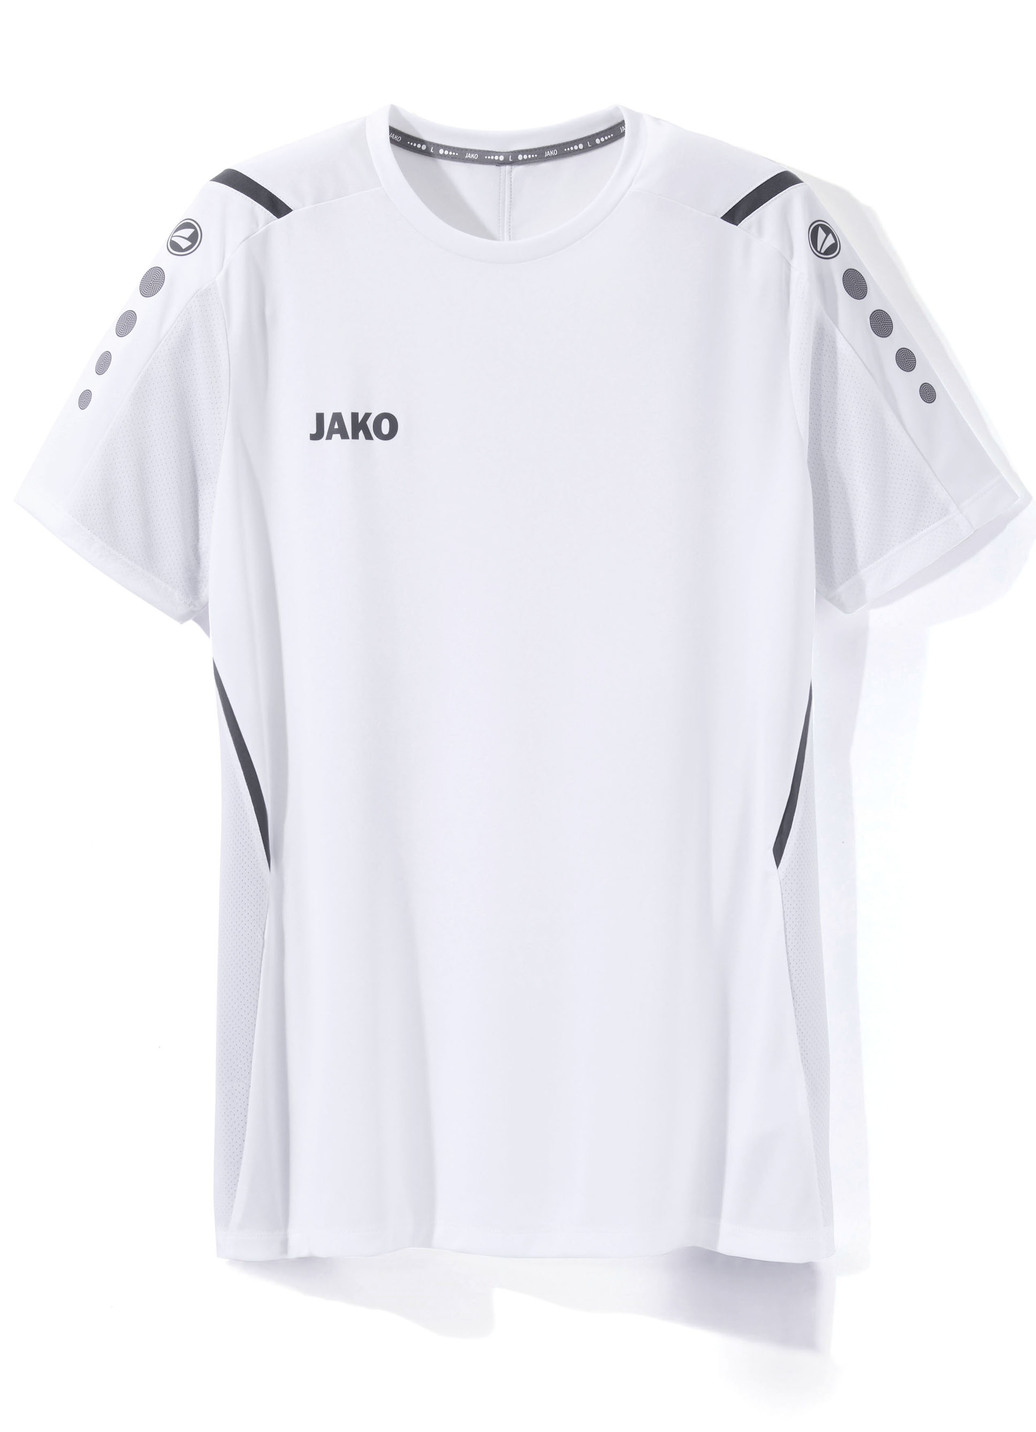 T-Shirt von „Jako“ in 4 Farben, Größe XXL (56), Weiss von Jako